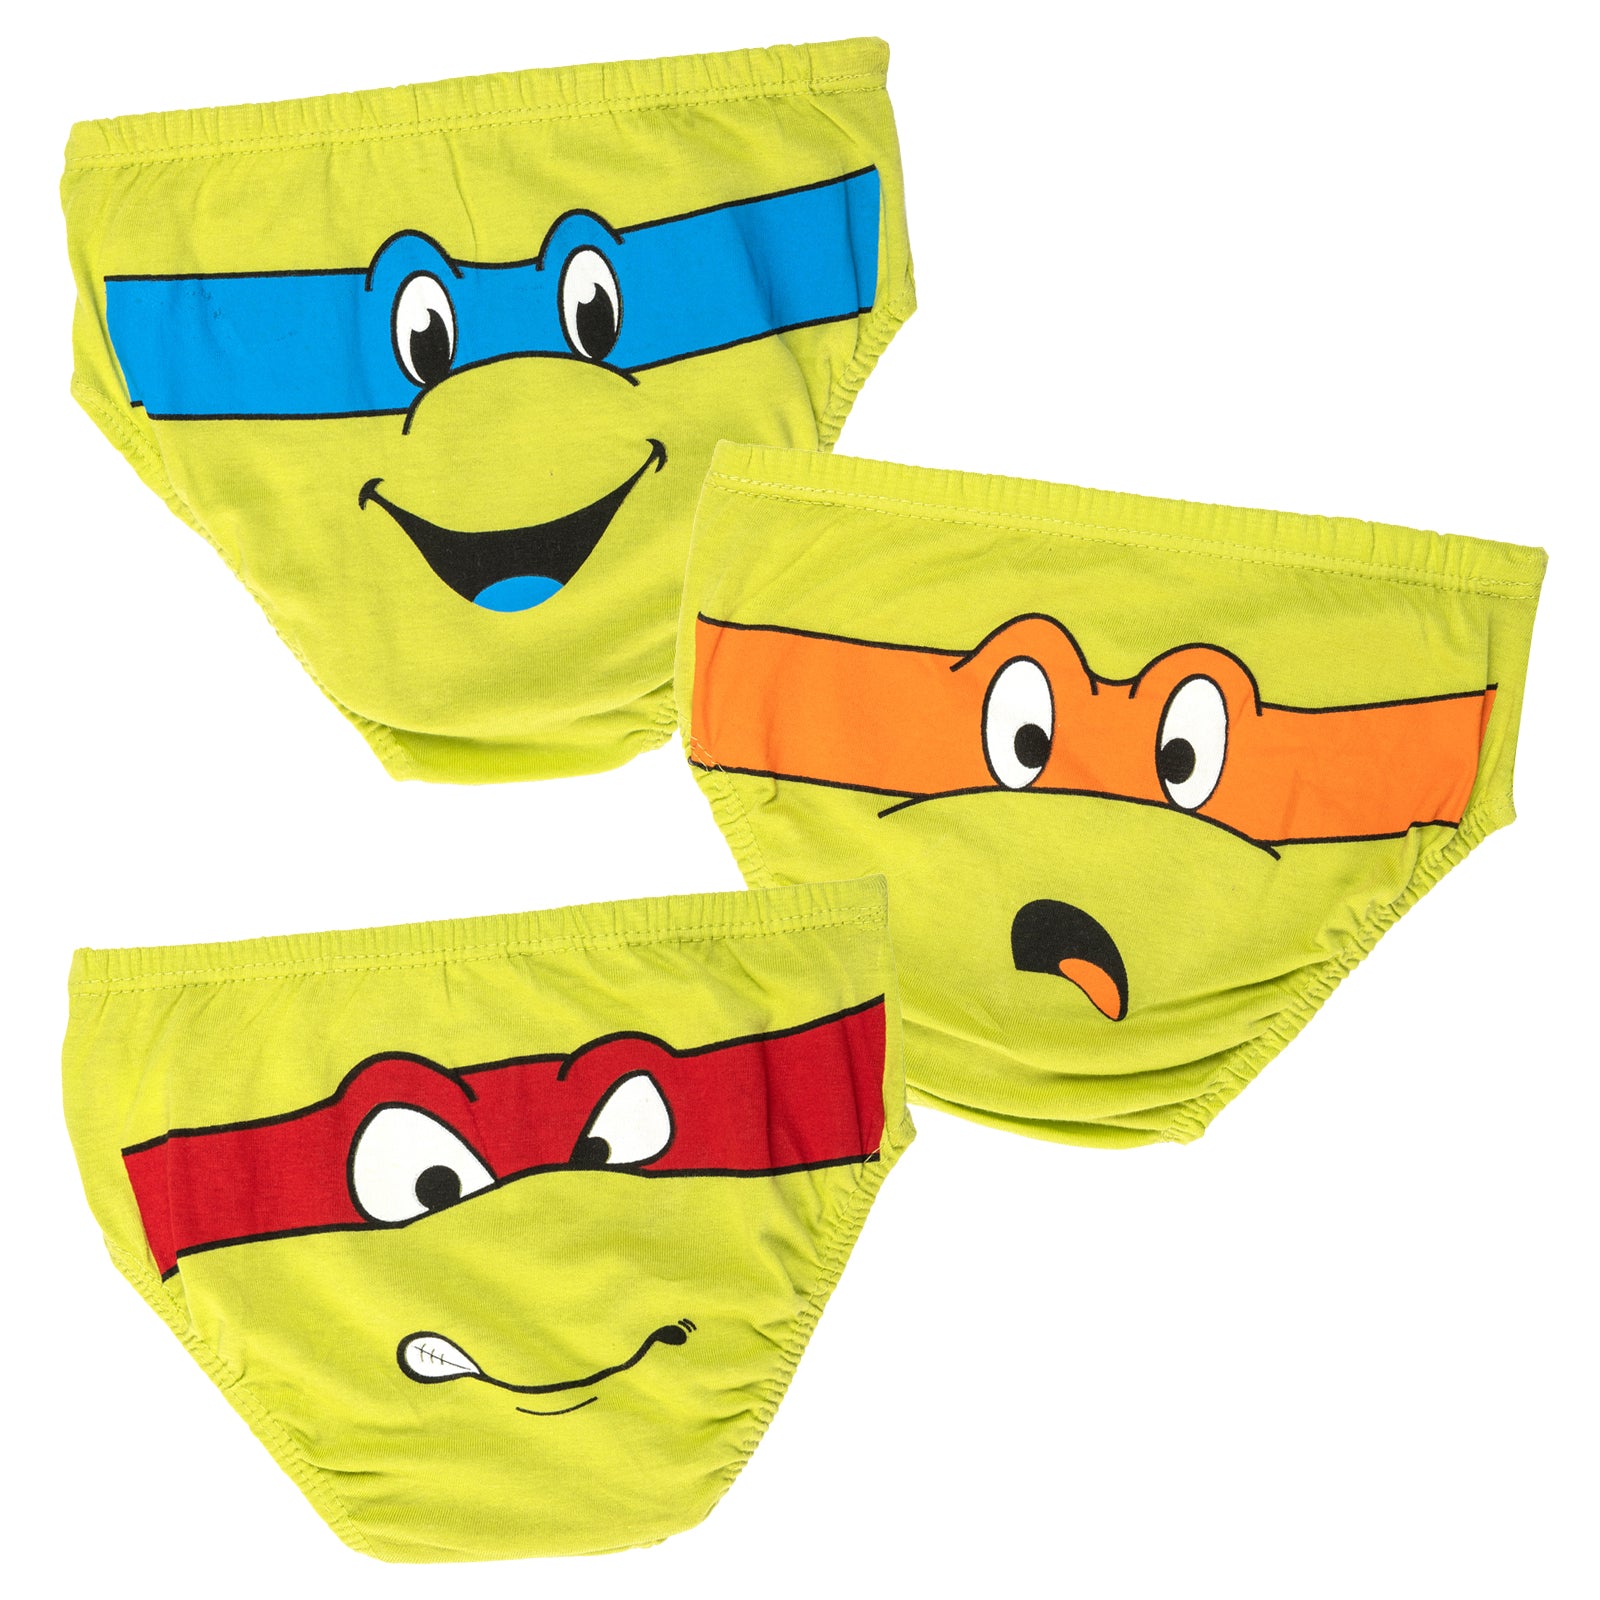 turtletime underwear